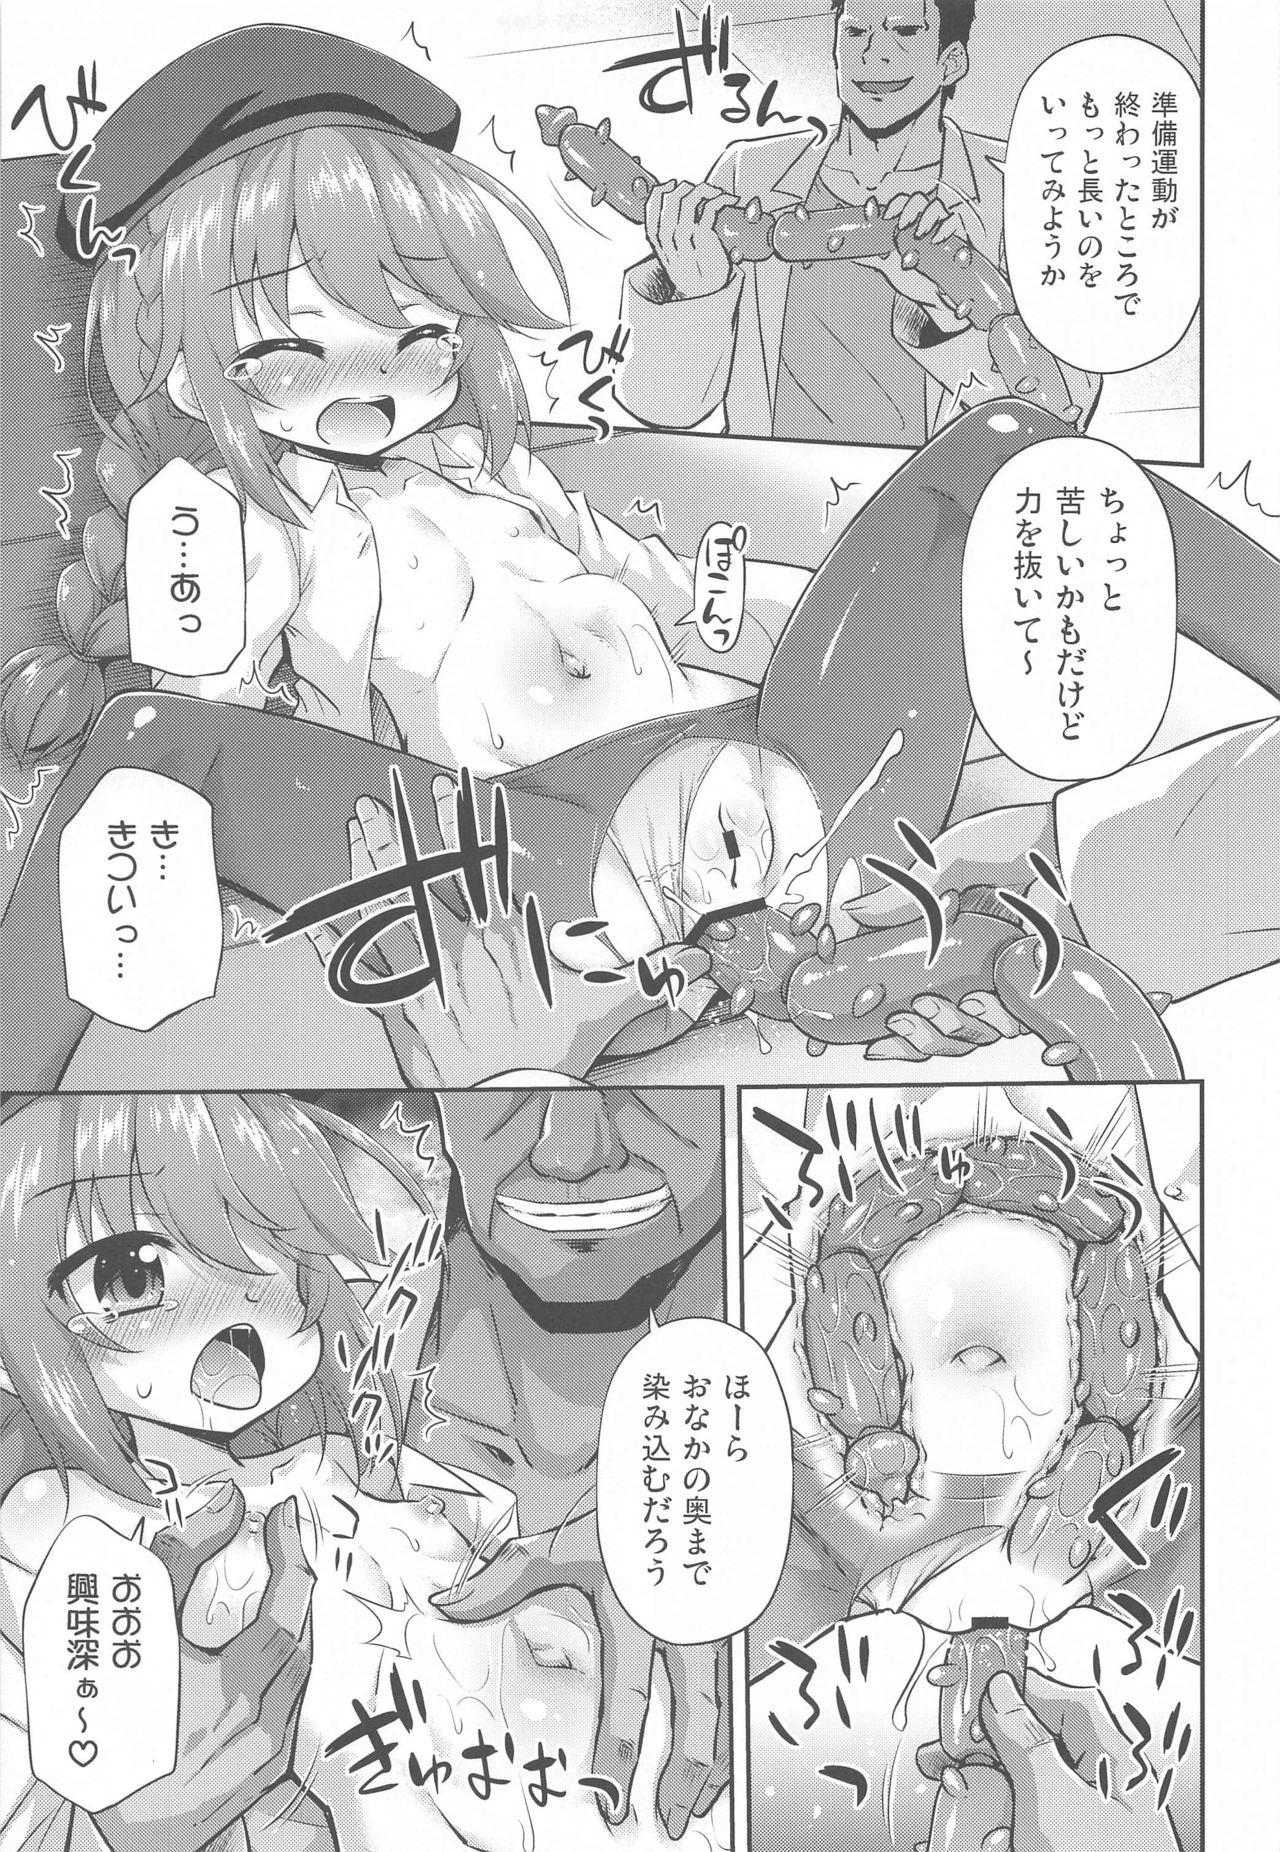 Foreskin Nannidemo Kyomifukaa! na Yuni-chan - Princess connect Sem Camisinha - Page 8